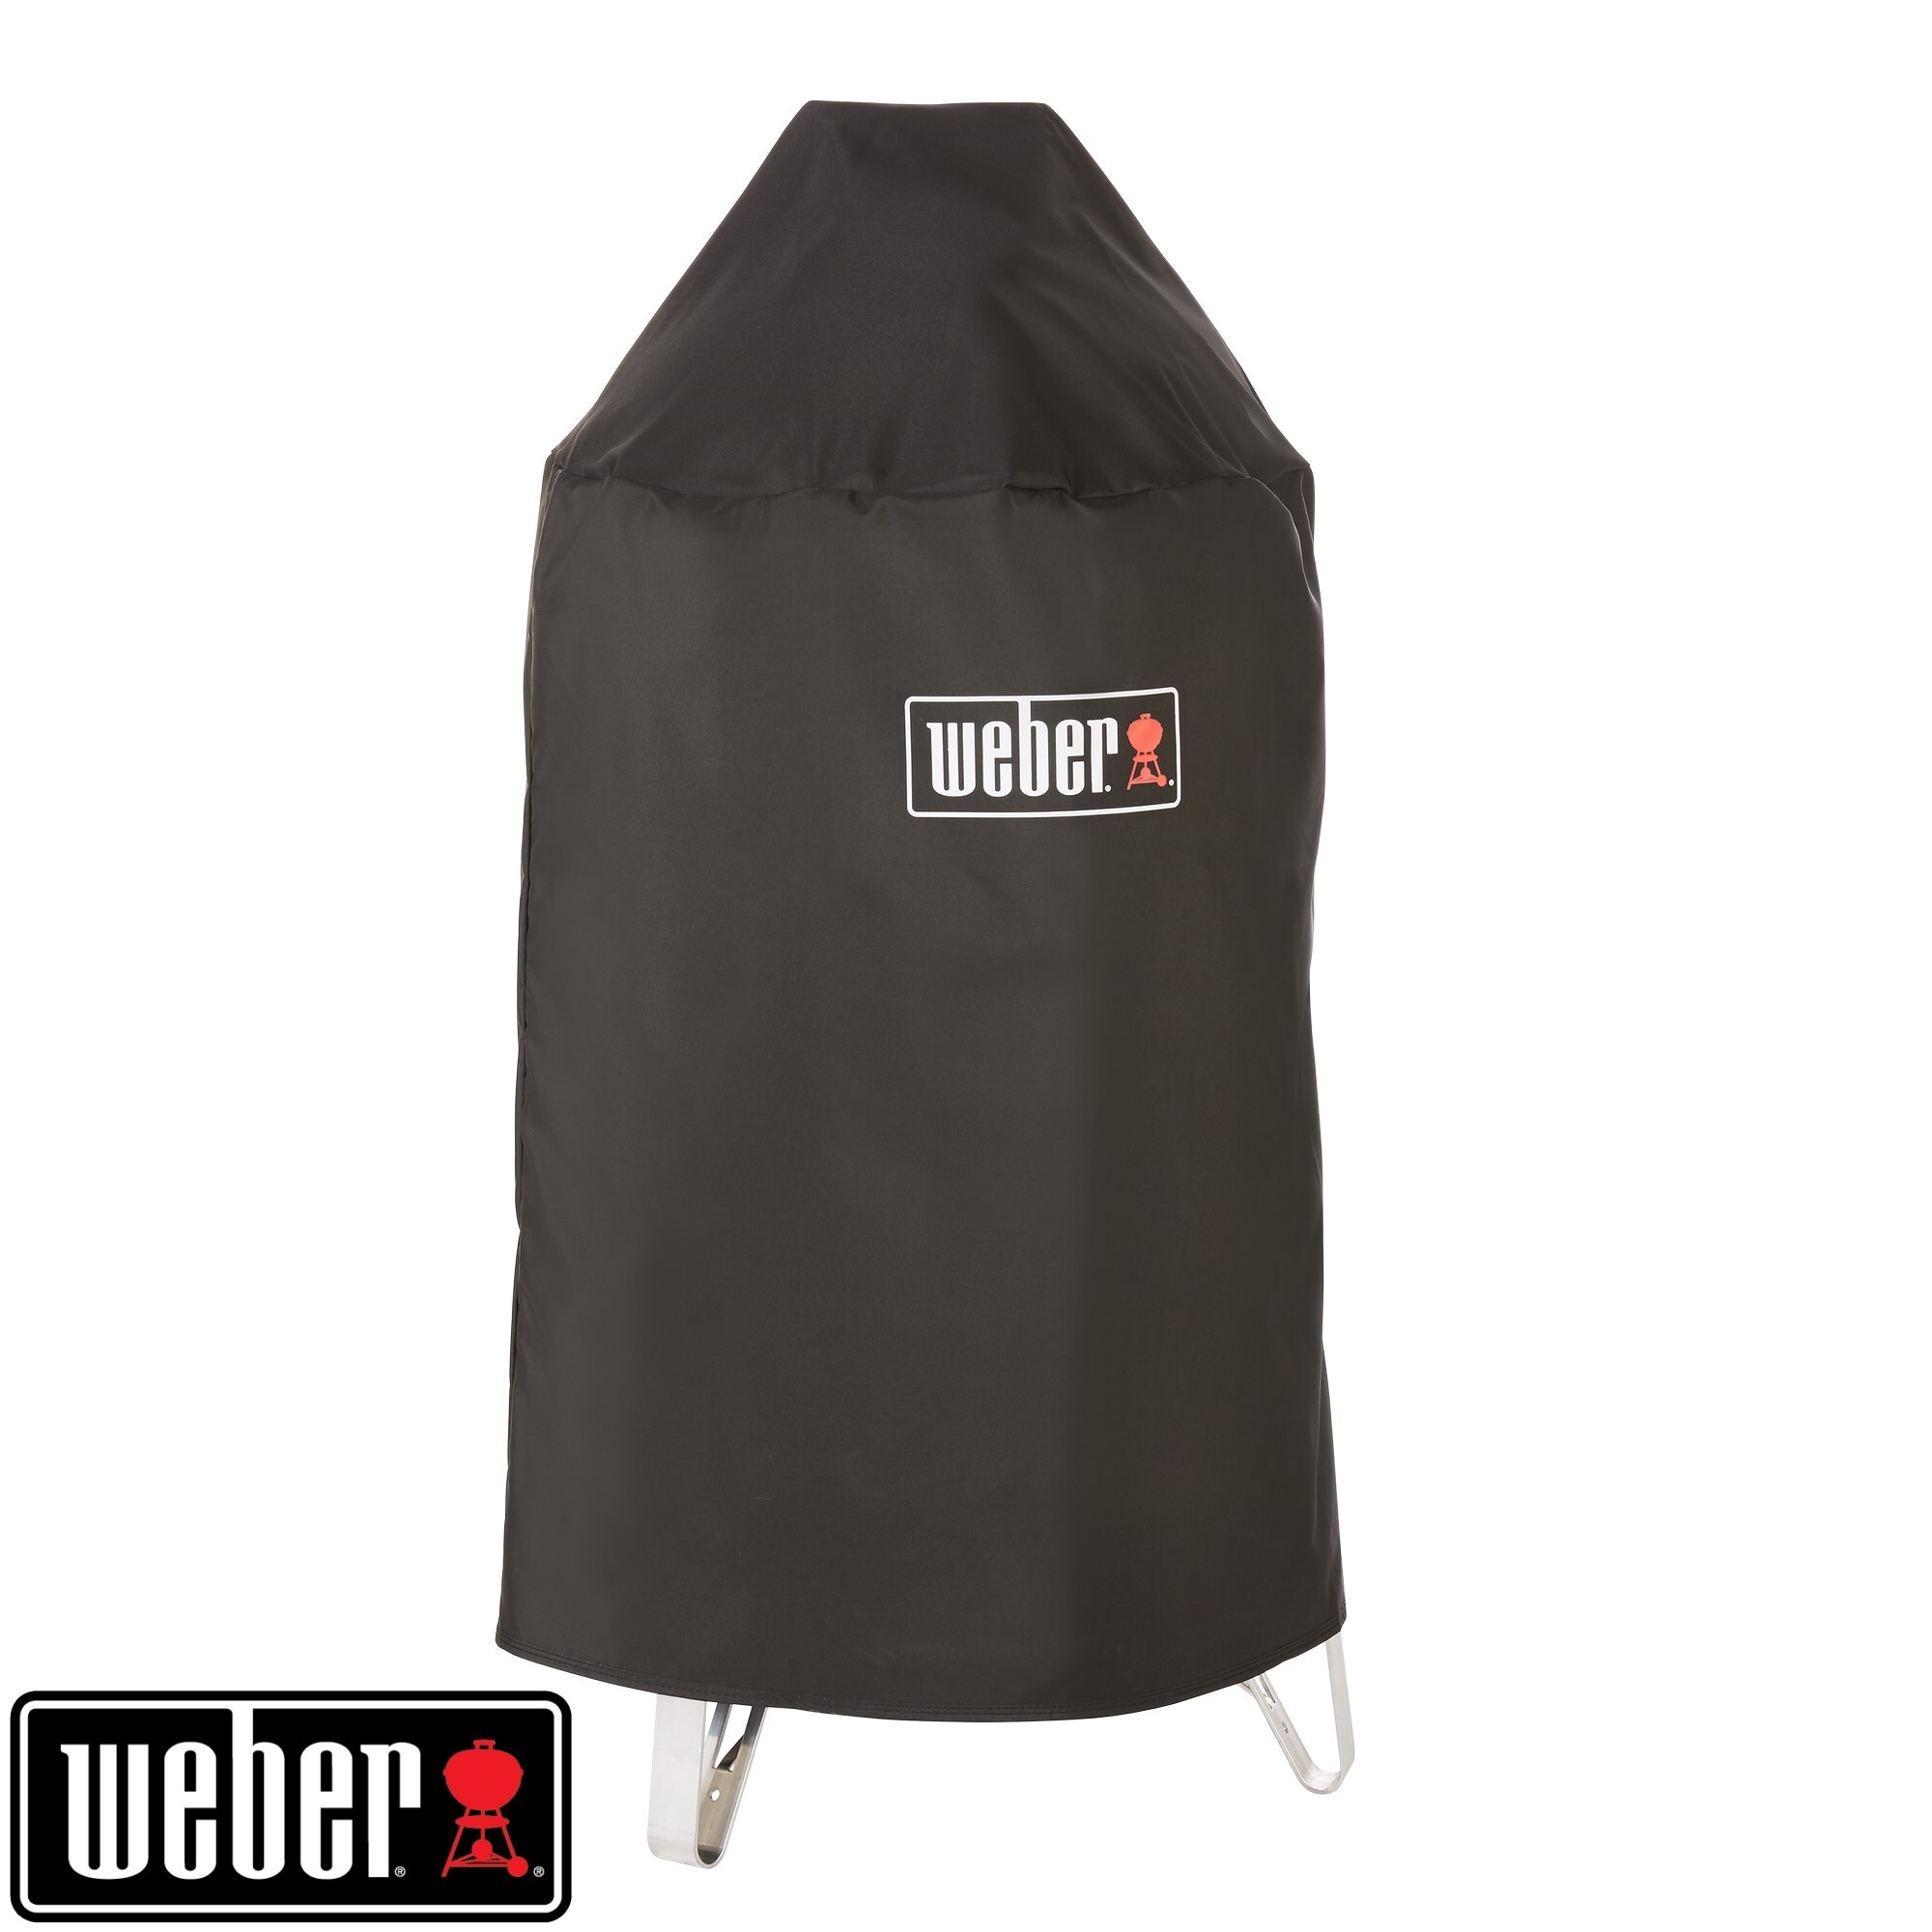 Weber® Smokey Mountain Cooker, 47 cm, Black